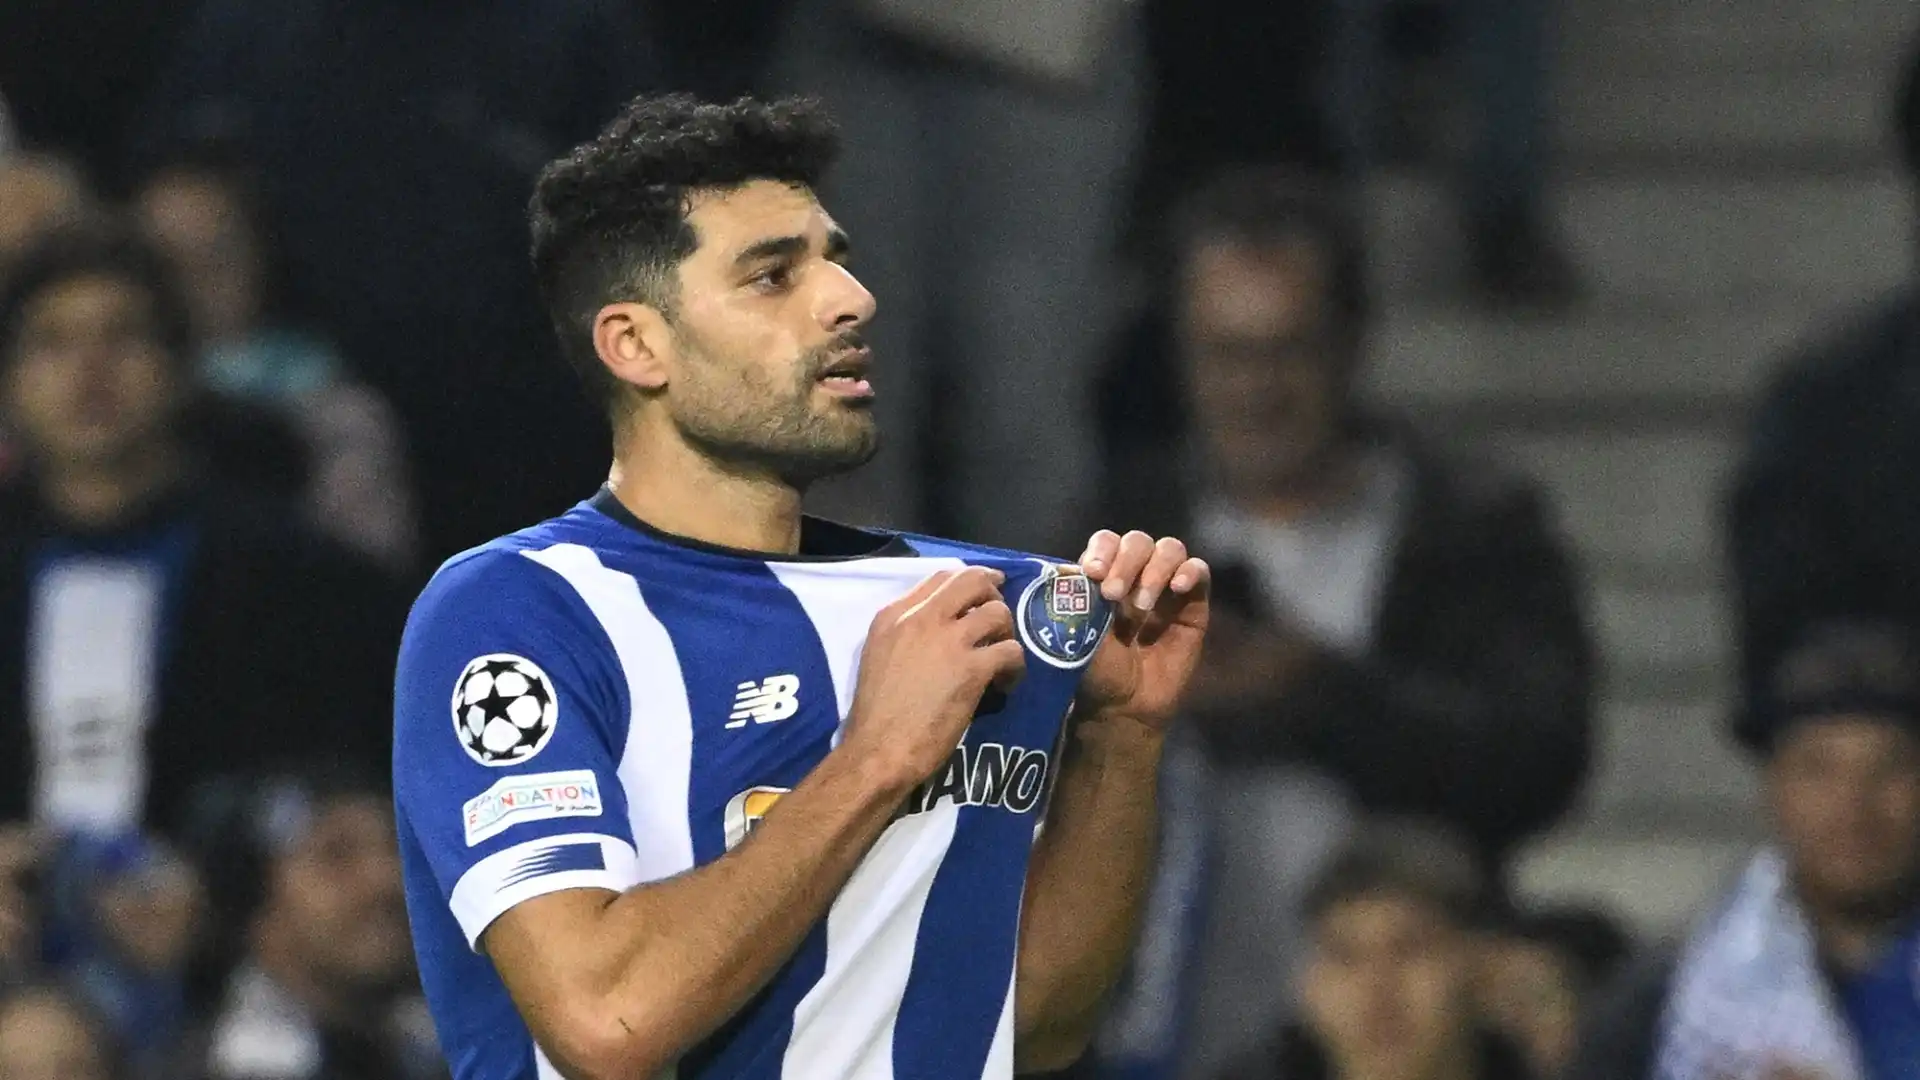 L'attaccante iraniano del Porto è in scadenza di contratto a giugno, ma l'Inter potrebbe anticipare il suo arrivo a gennaio